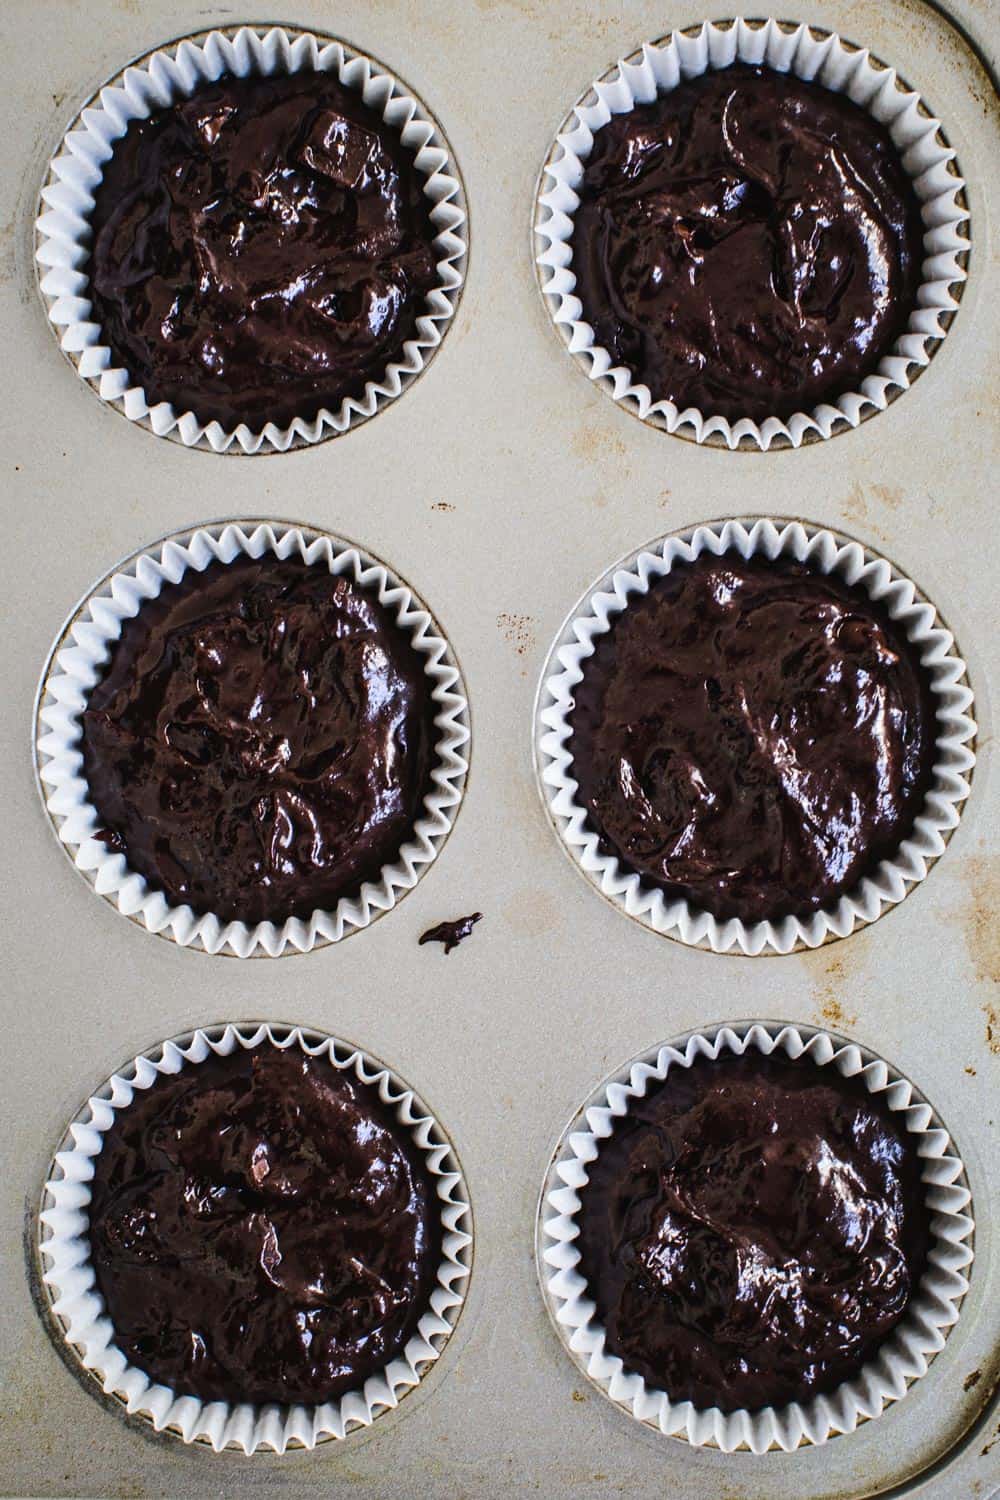 Chocolate muffin batter in muffin tin.